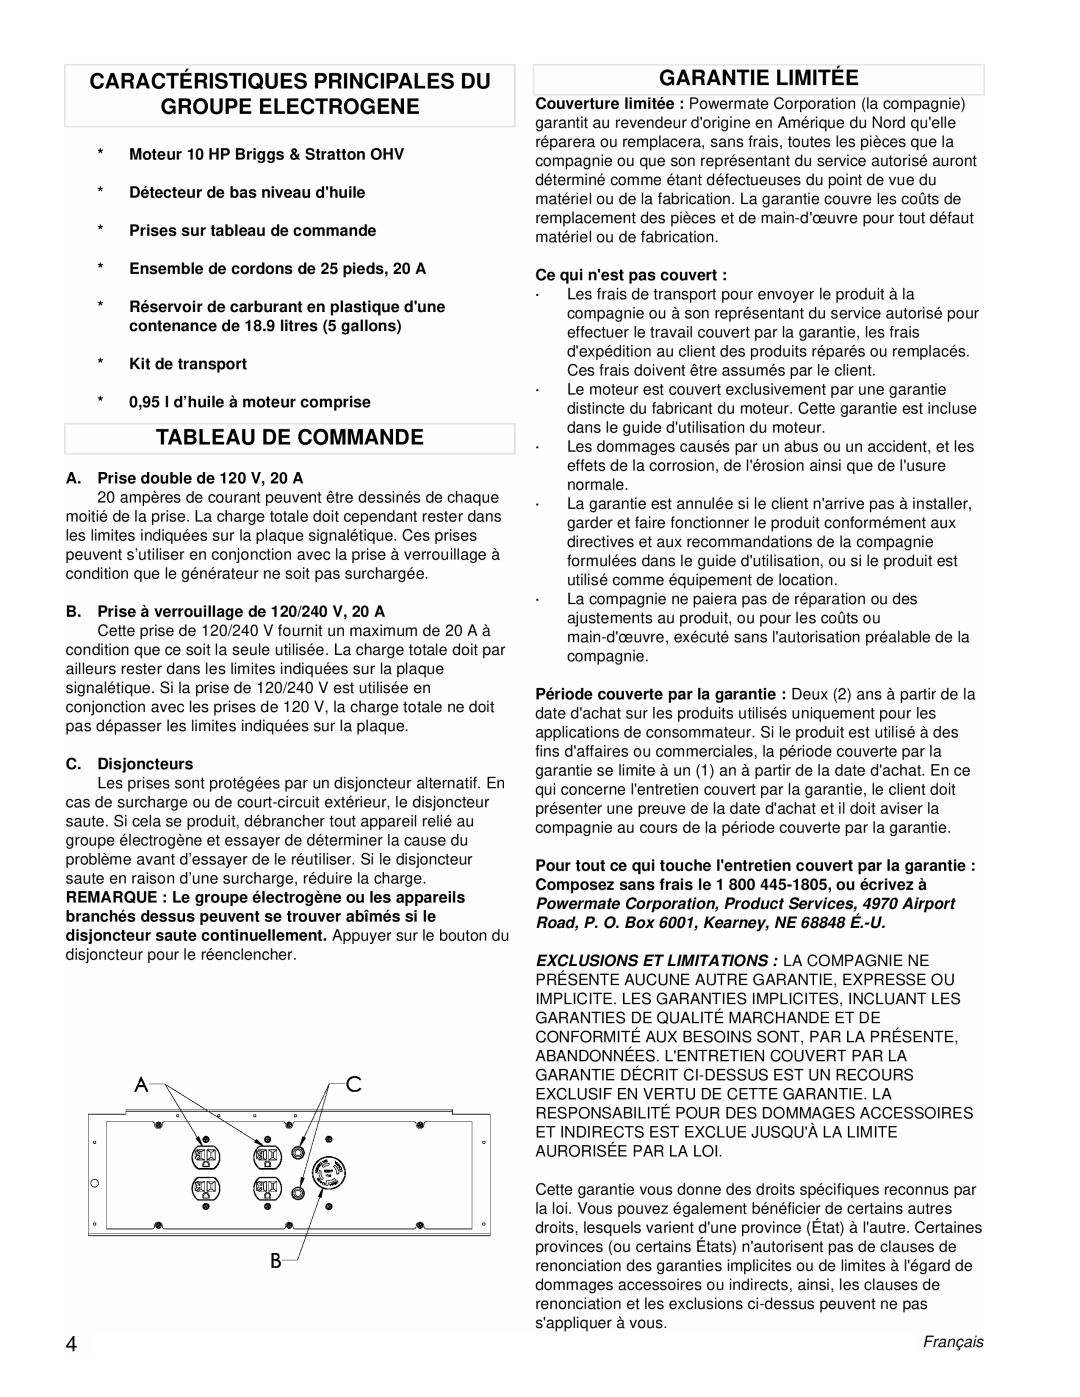 Powermate PM0545010 Caractéristiques Principales Du, Groupe Electrogene, Tableau De Commande, Garantie Limitée, Français 